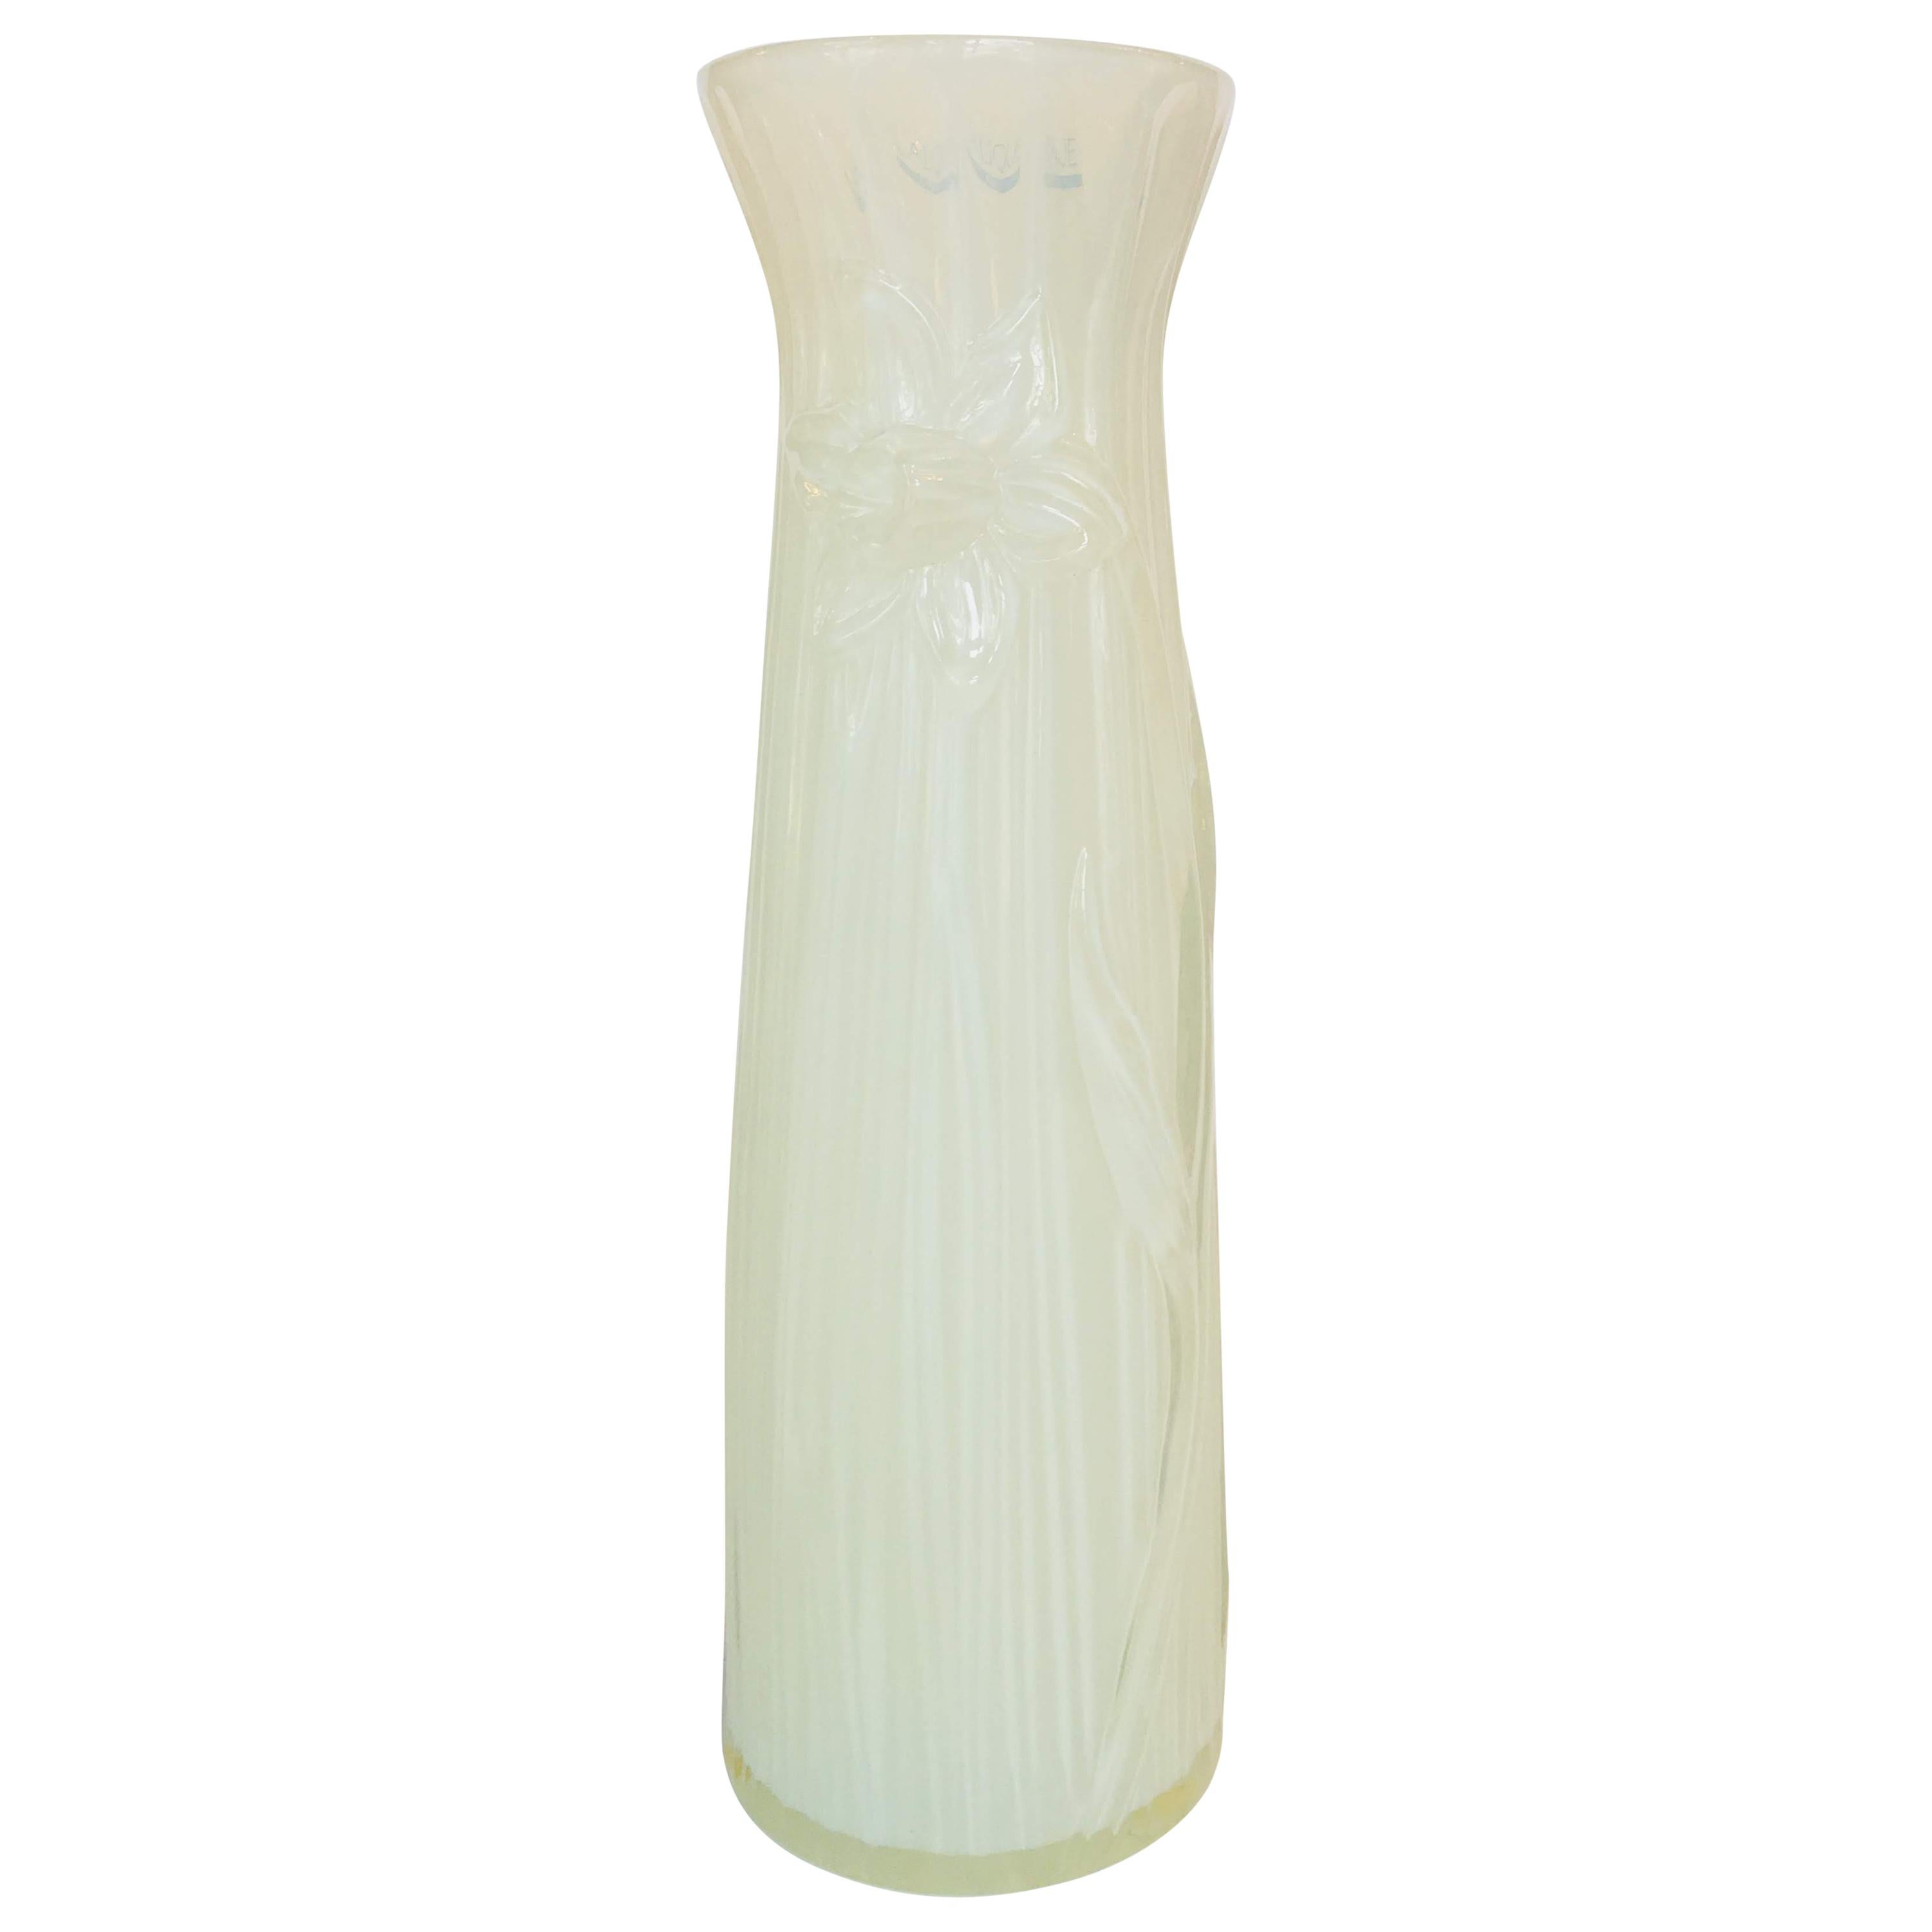 Lalique "Narcissus" Vase